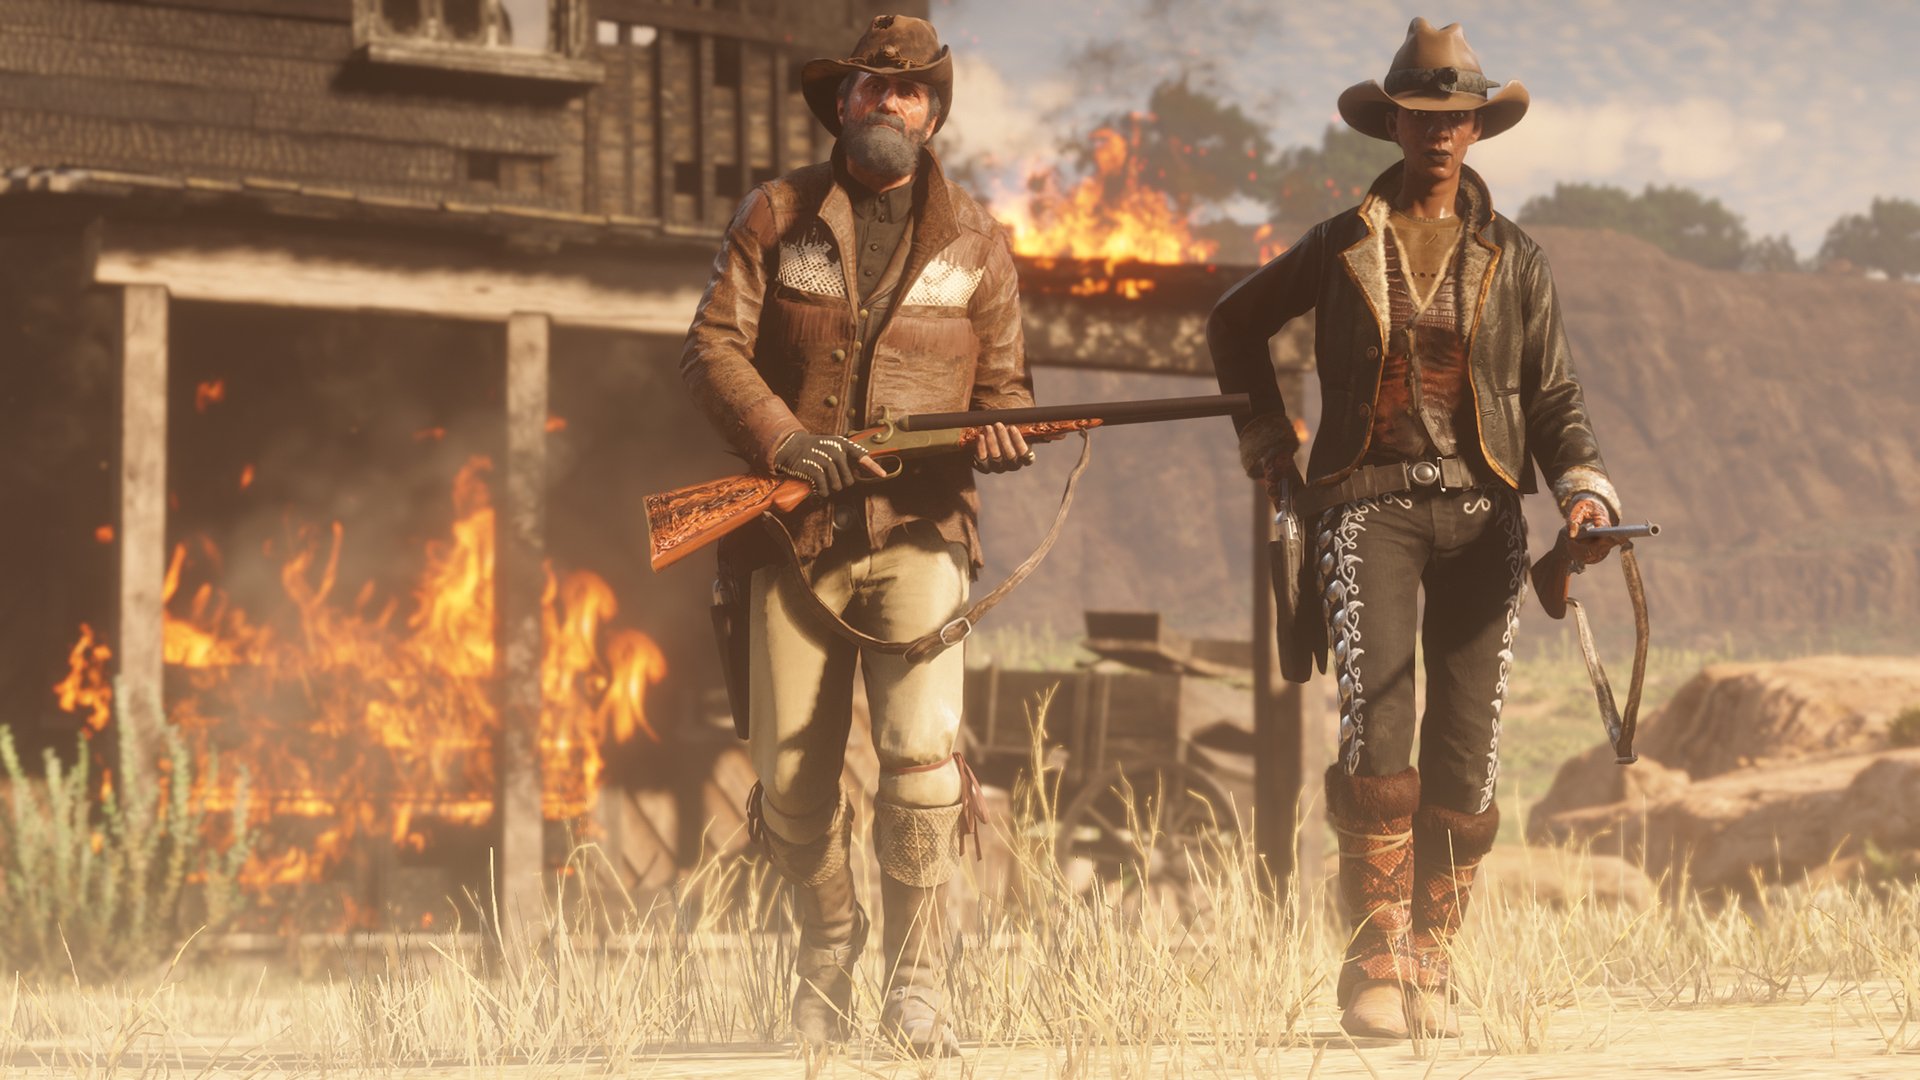 Red Dead Redemption 2: Como conseguir dinheiro fácil e rápido, Torcedores